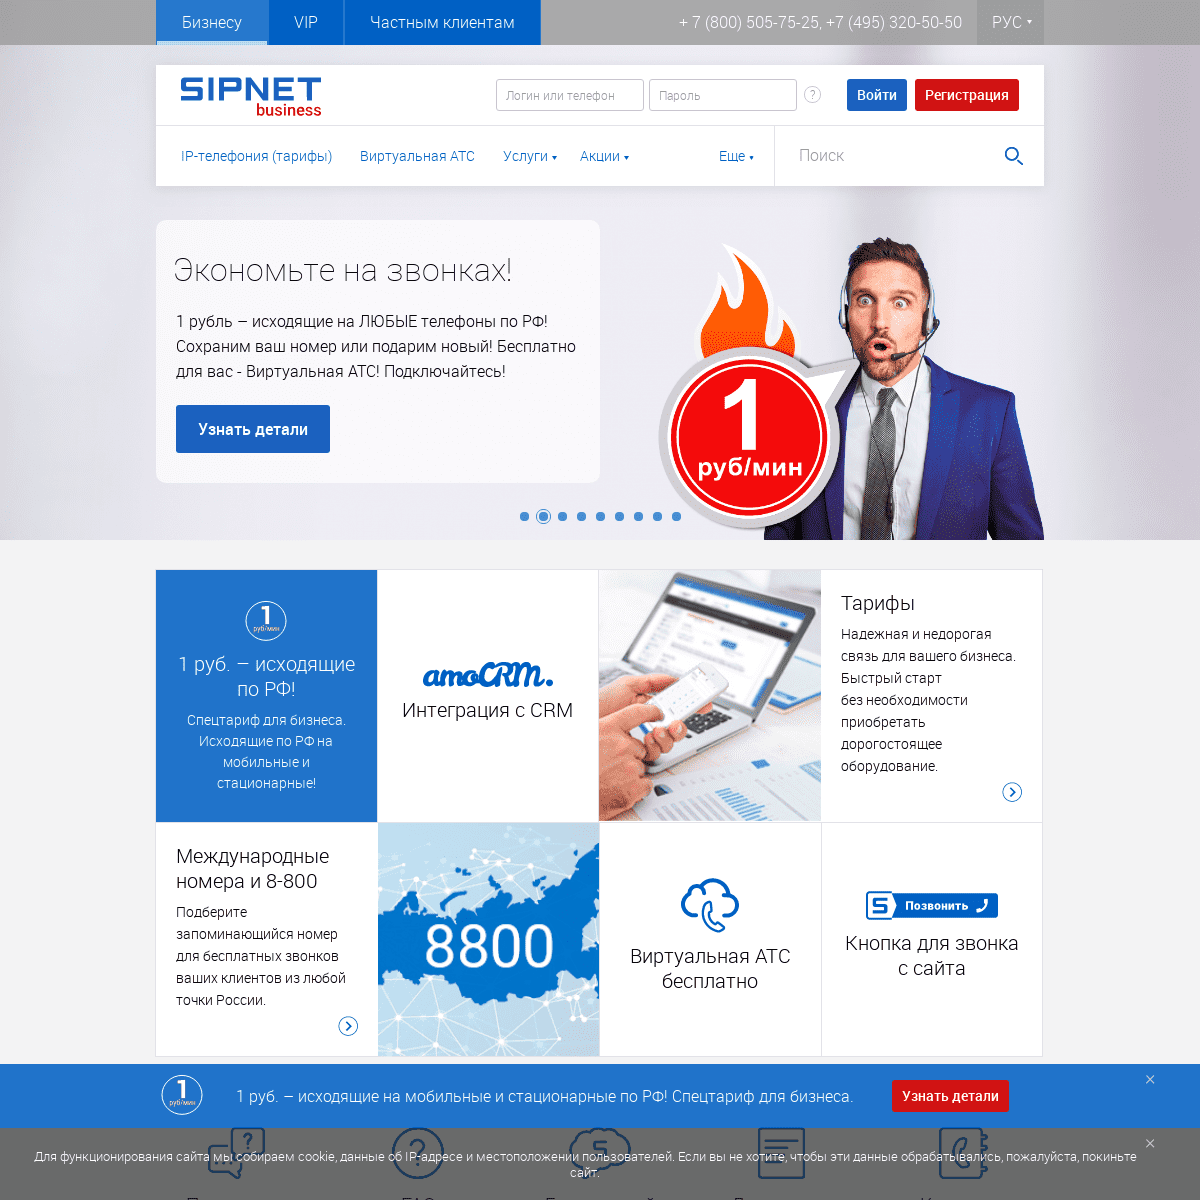 A complete backup of sipnet.ru